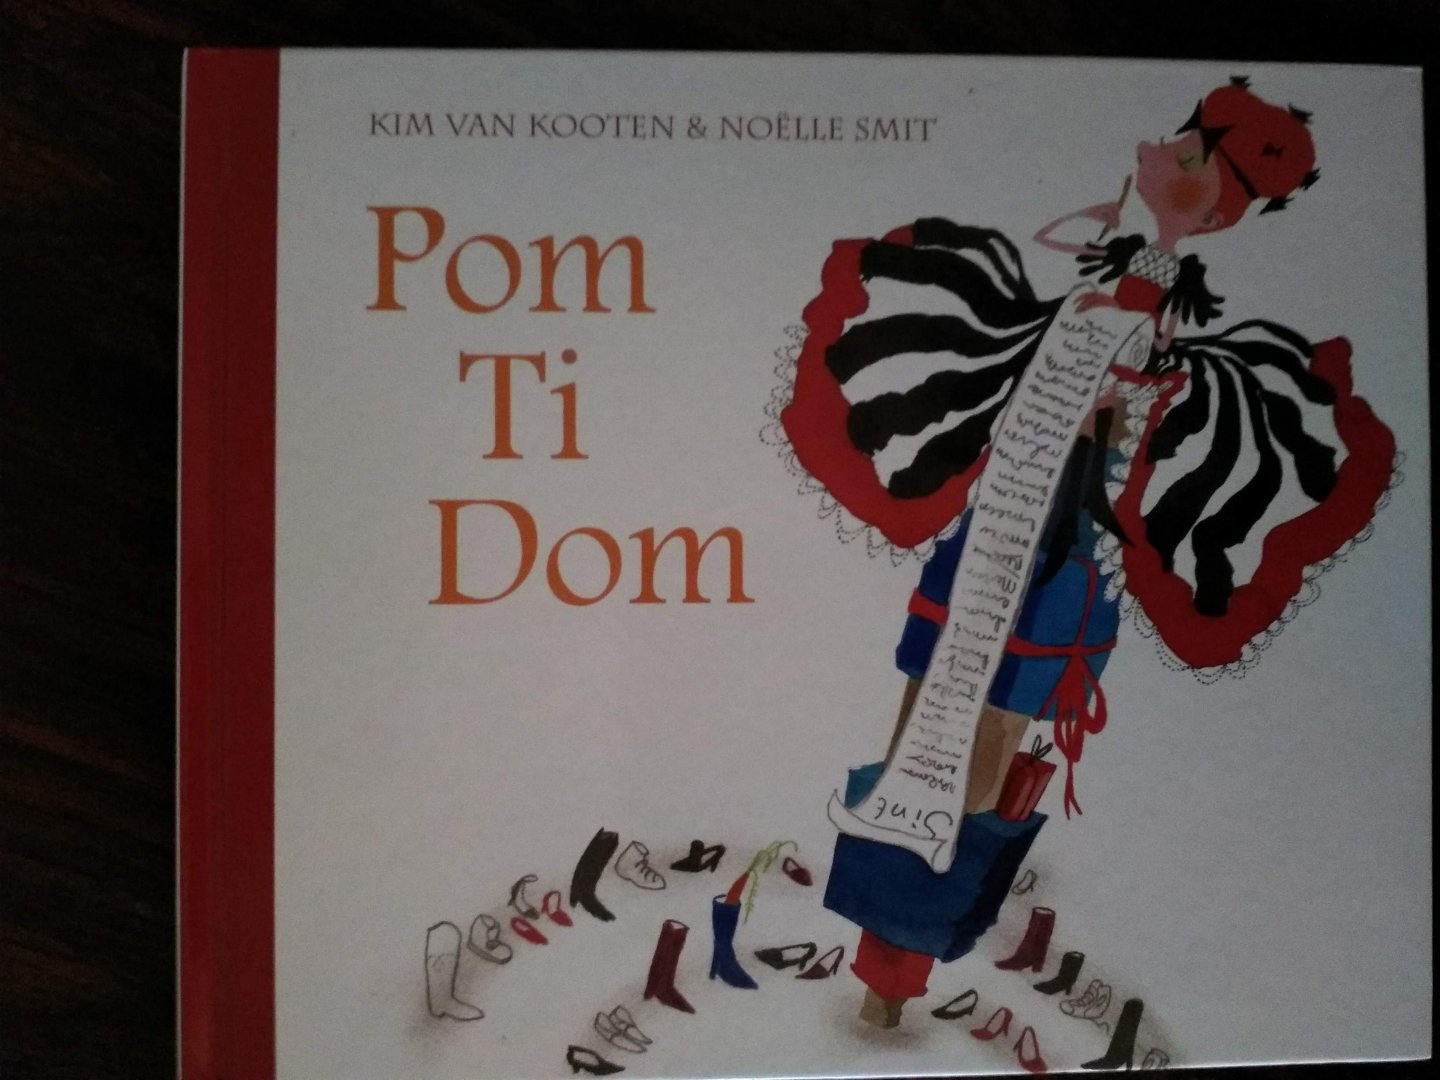 Kooten, K. van    en Noëlle Smit - Pom Ti Dom  (uitgave mede door Douwe Egberts) vooral mooie illustraties met tekst. Sinterklaasverhaal